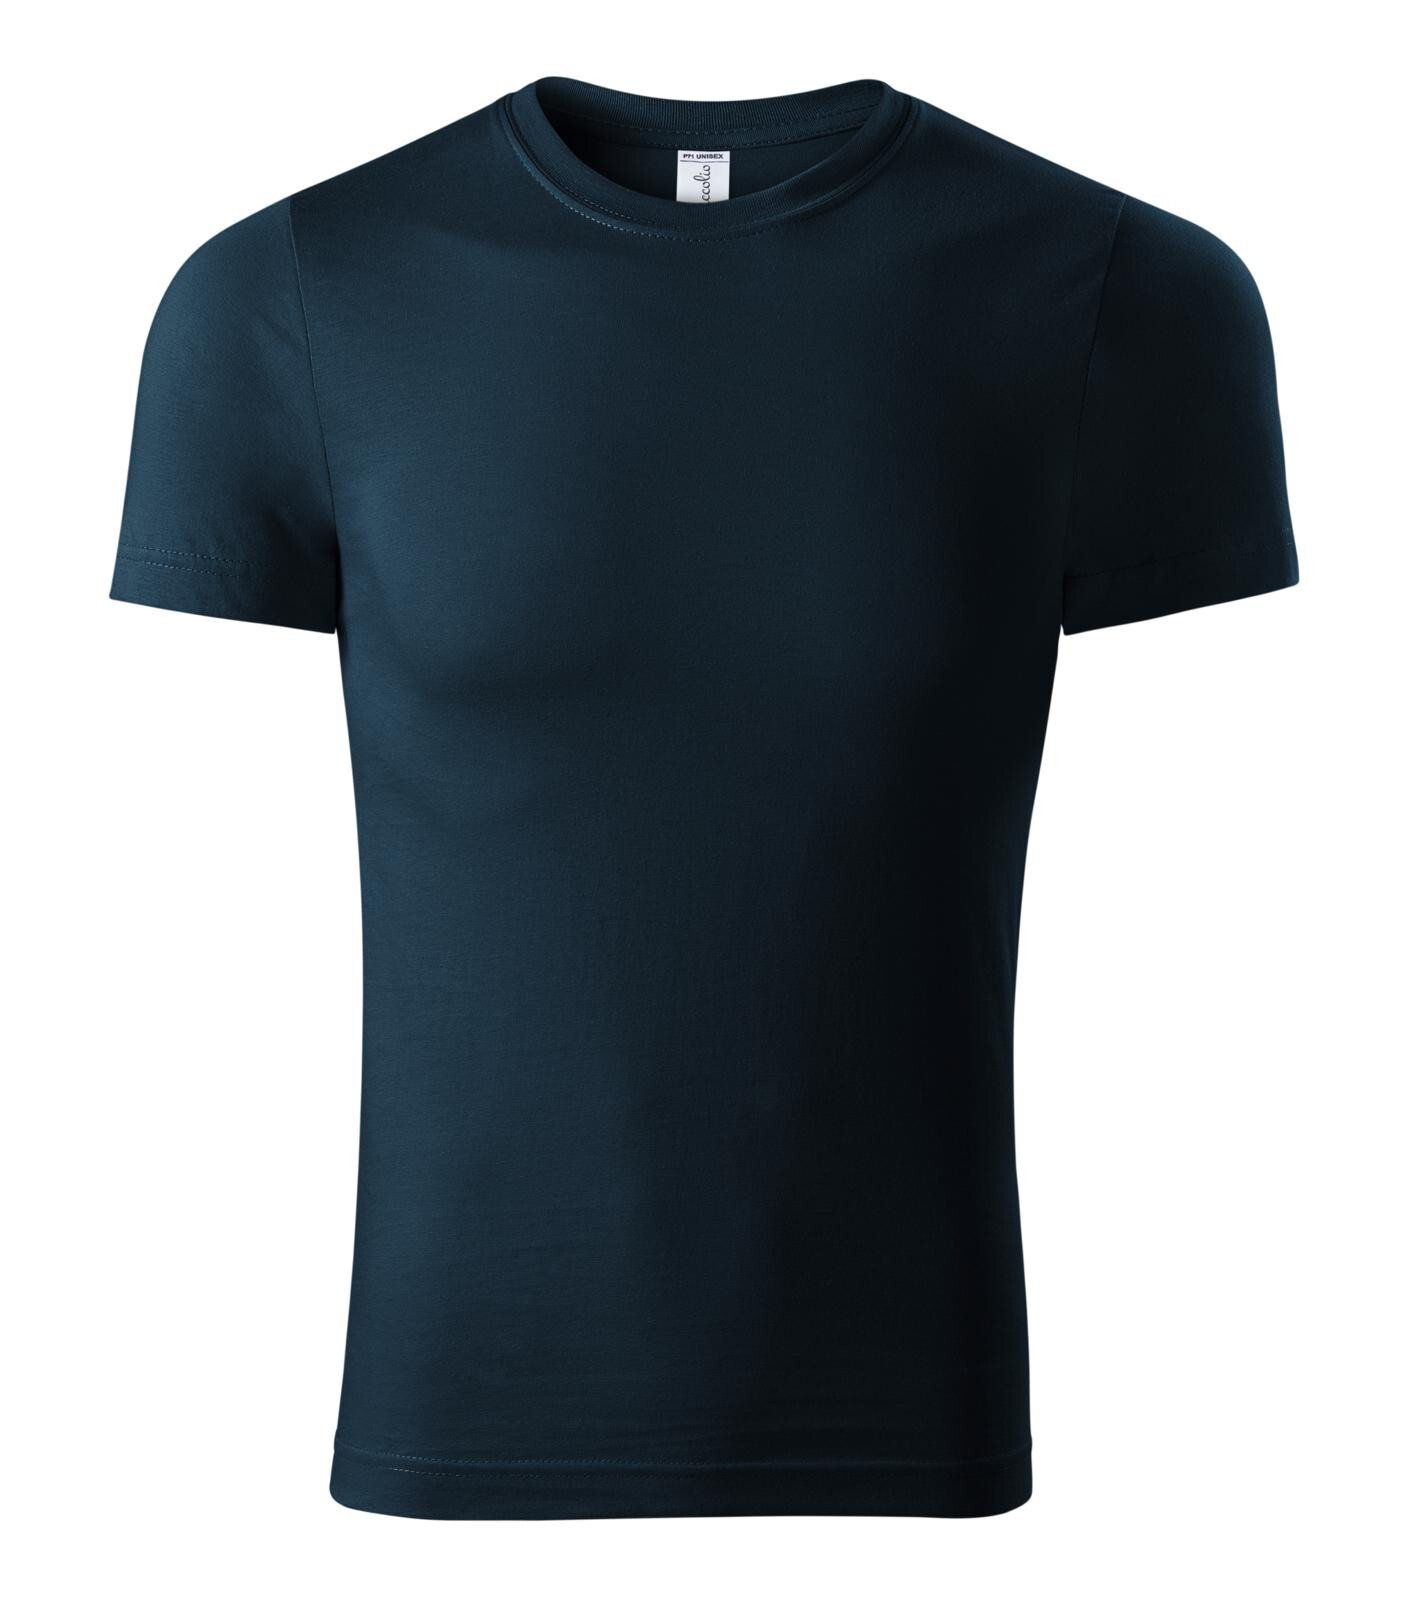 Unisex bavlnené tričko Piccolio Parade P71 - veľkosť: S, farba: tmavo modrá